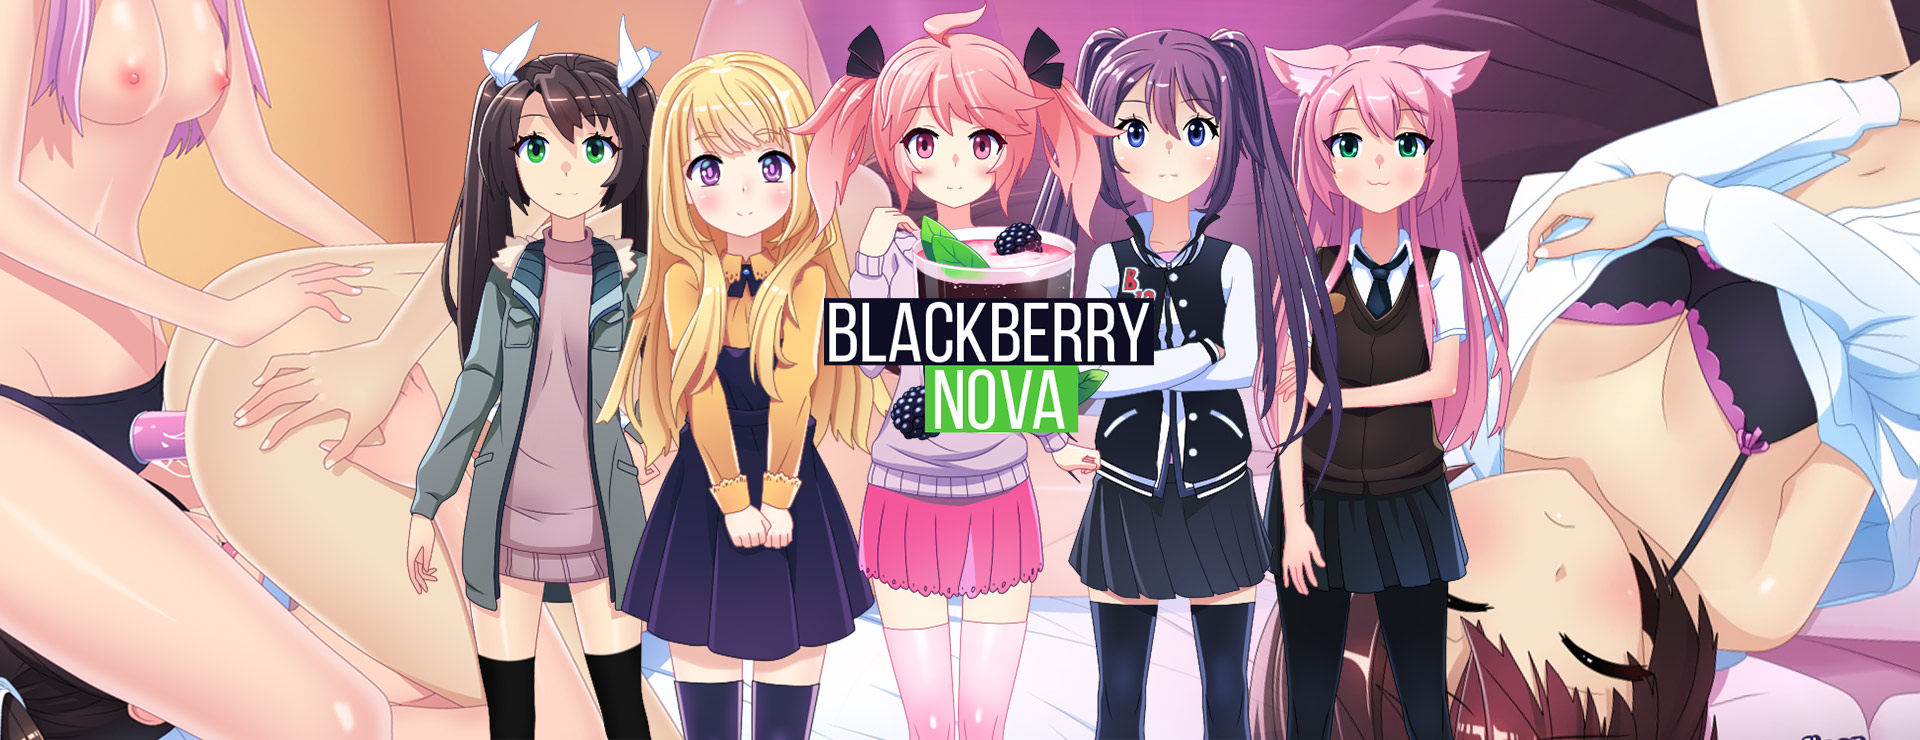 BlackberryNOVA - Powieść wizualna Gra